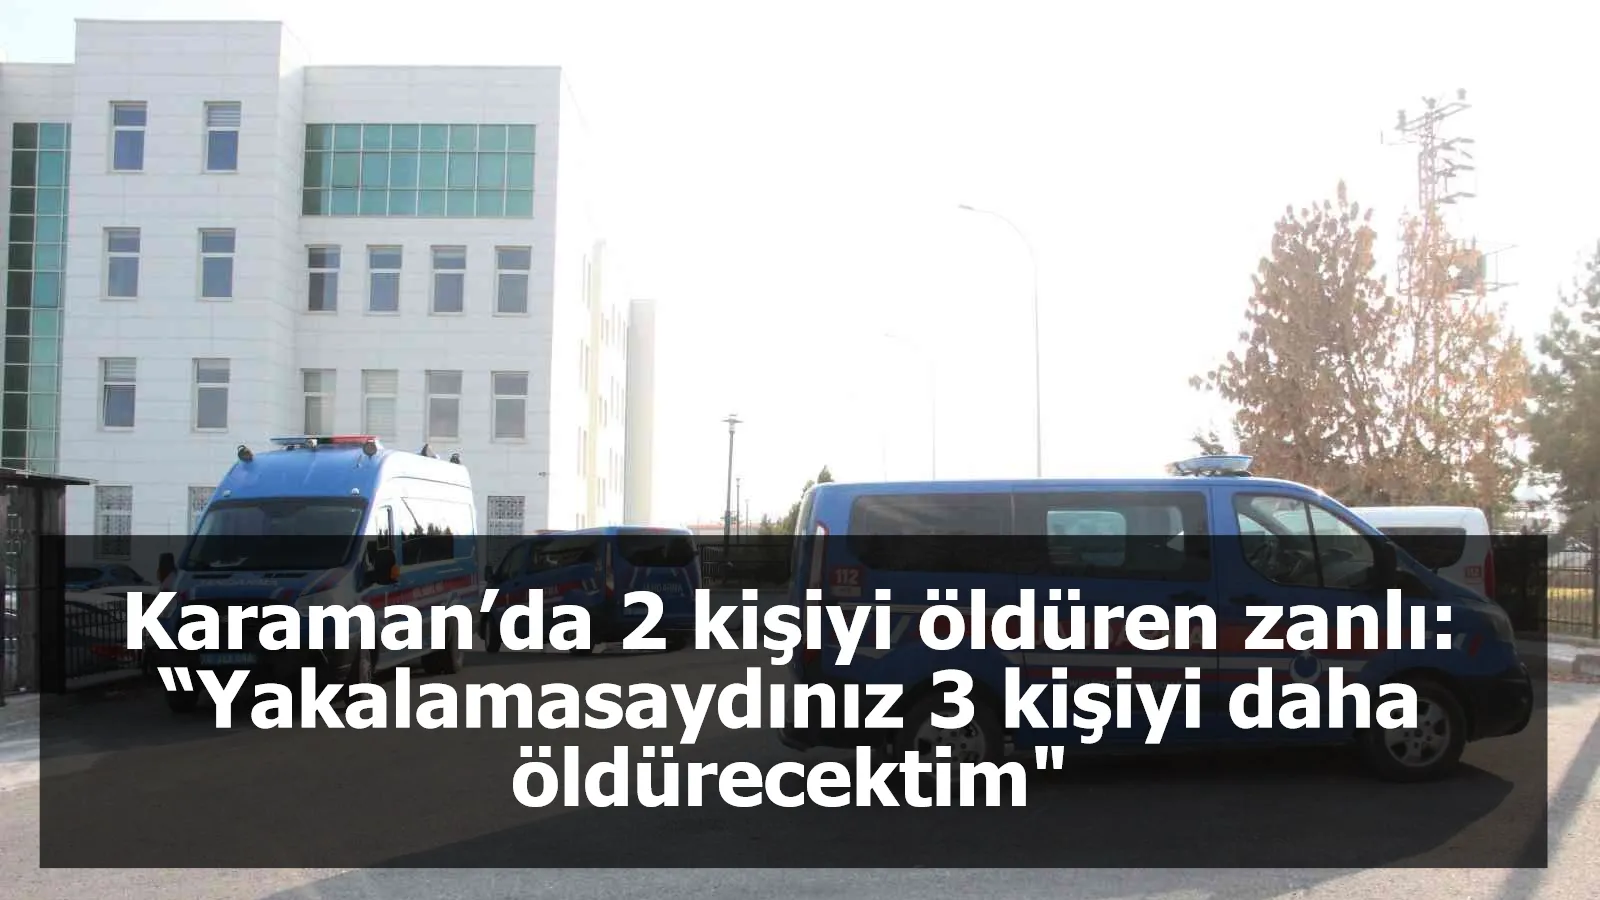 Karaman’da 2 kişiyi öldüren zanlı: “Yakalamasaydınız 3 kişiyi daha öldürecektim"